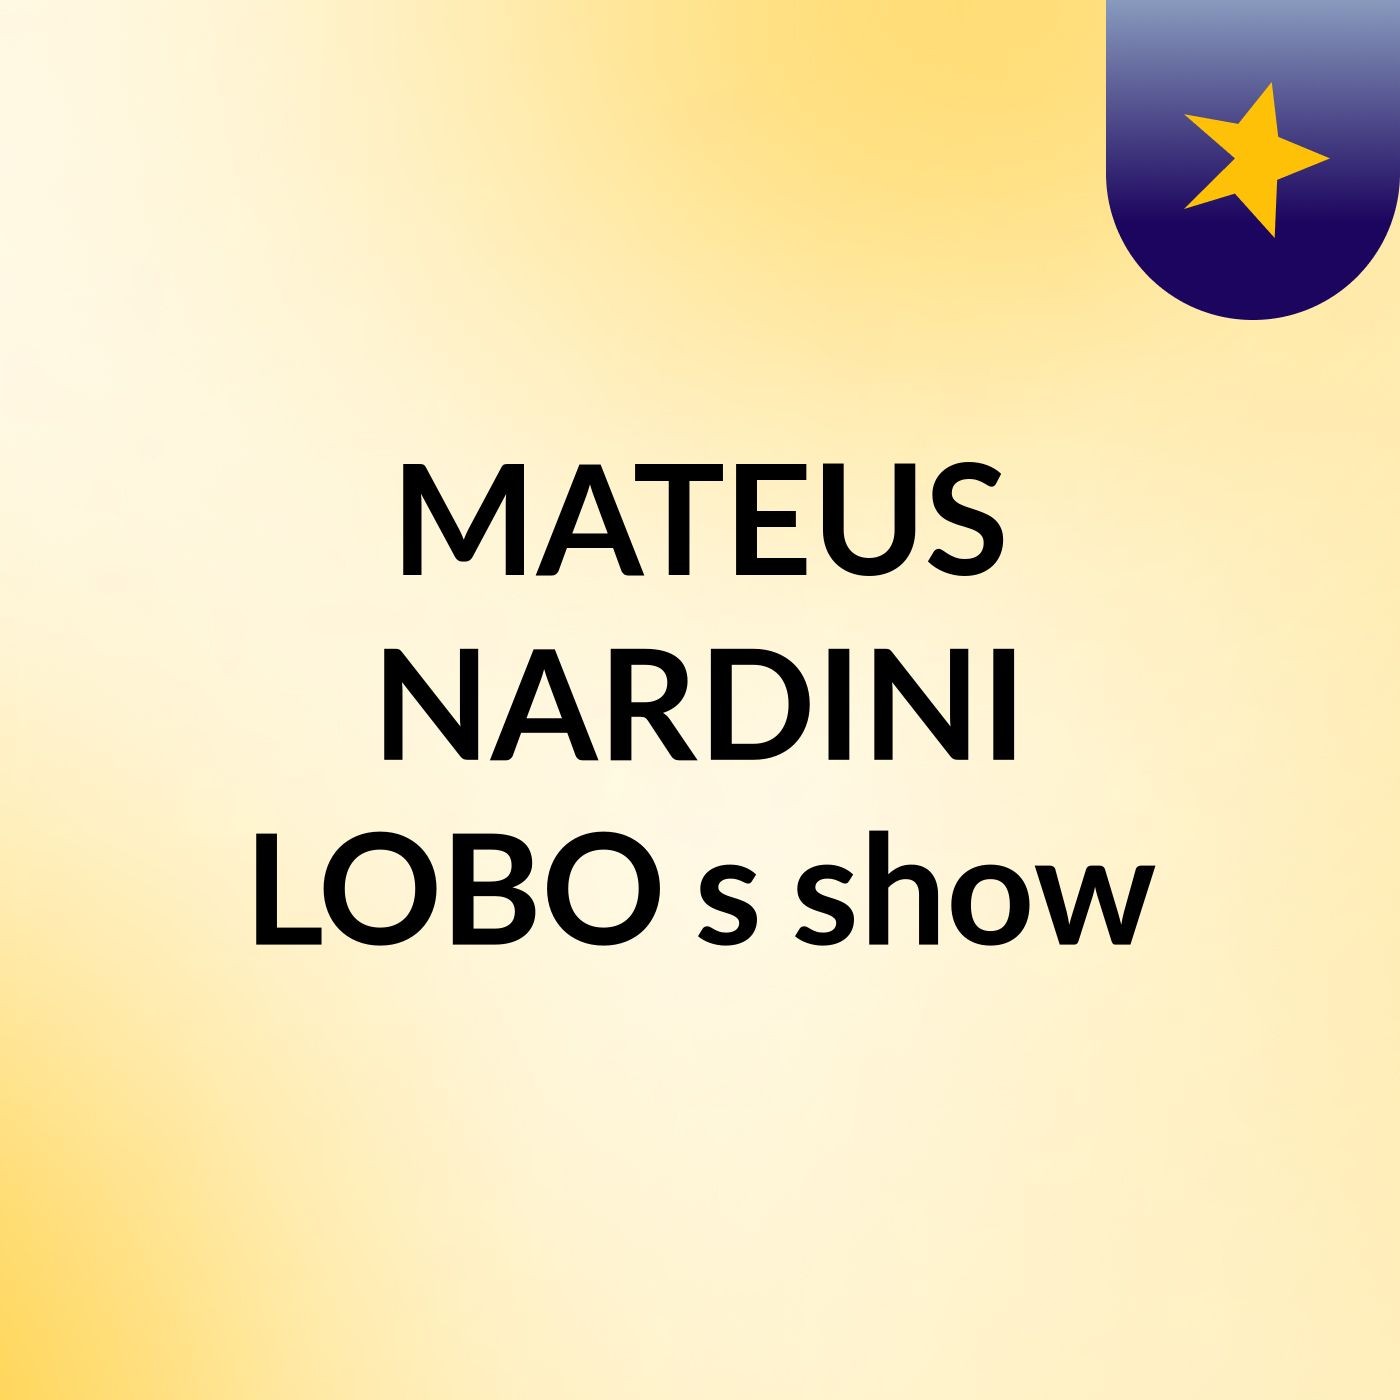 MATEUS NARDINI LOBO's show